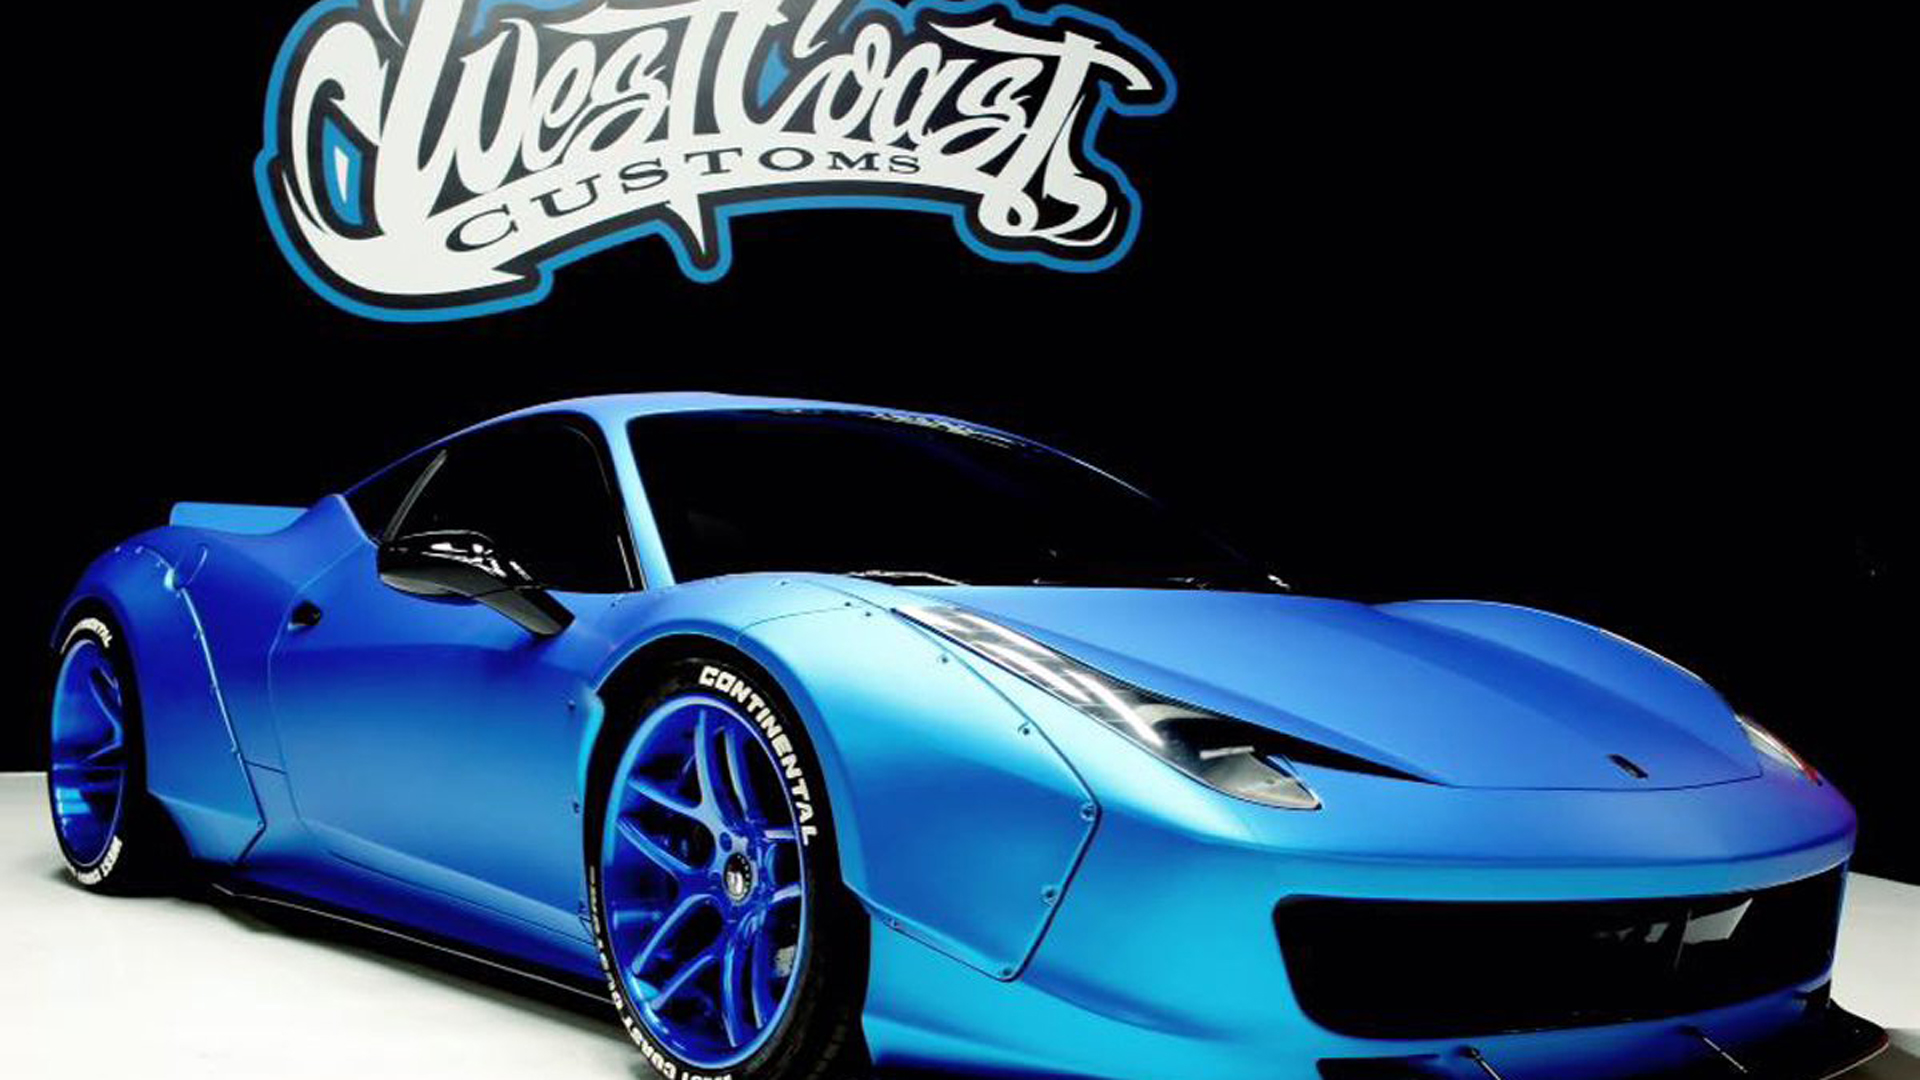 West Coast Customs modificó la Ferrari 458 Italia de Bieber incorporando reformas en su carrocería que molestaron a los diseñadores de Maranello